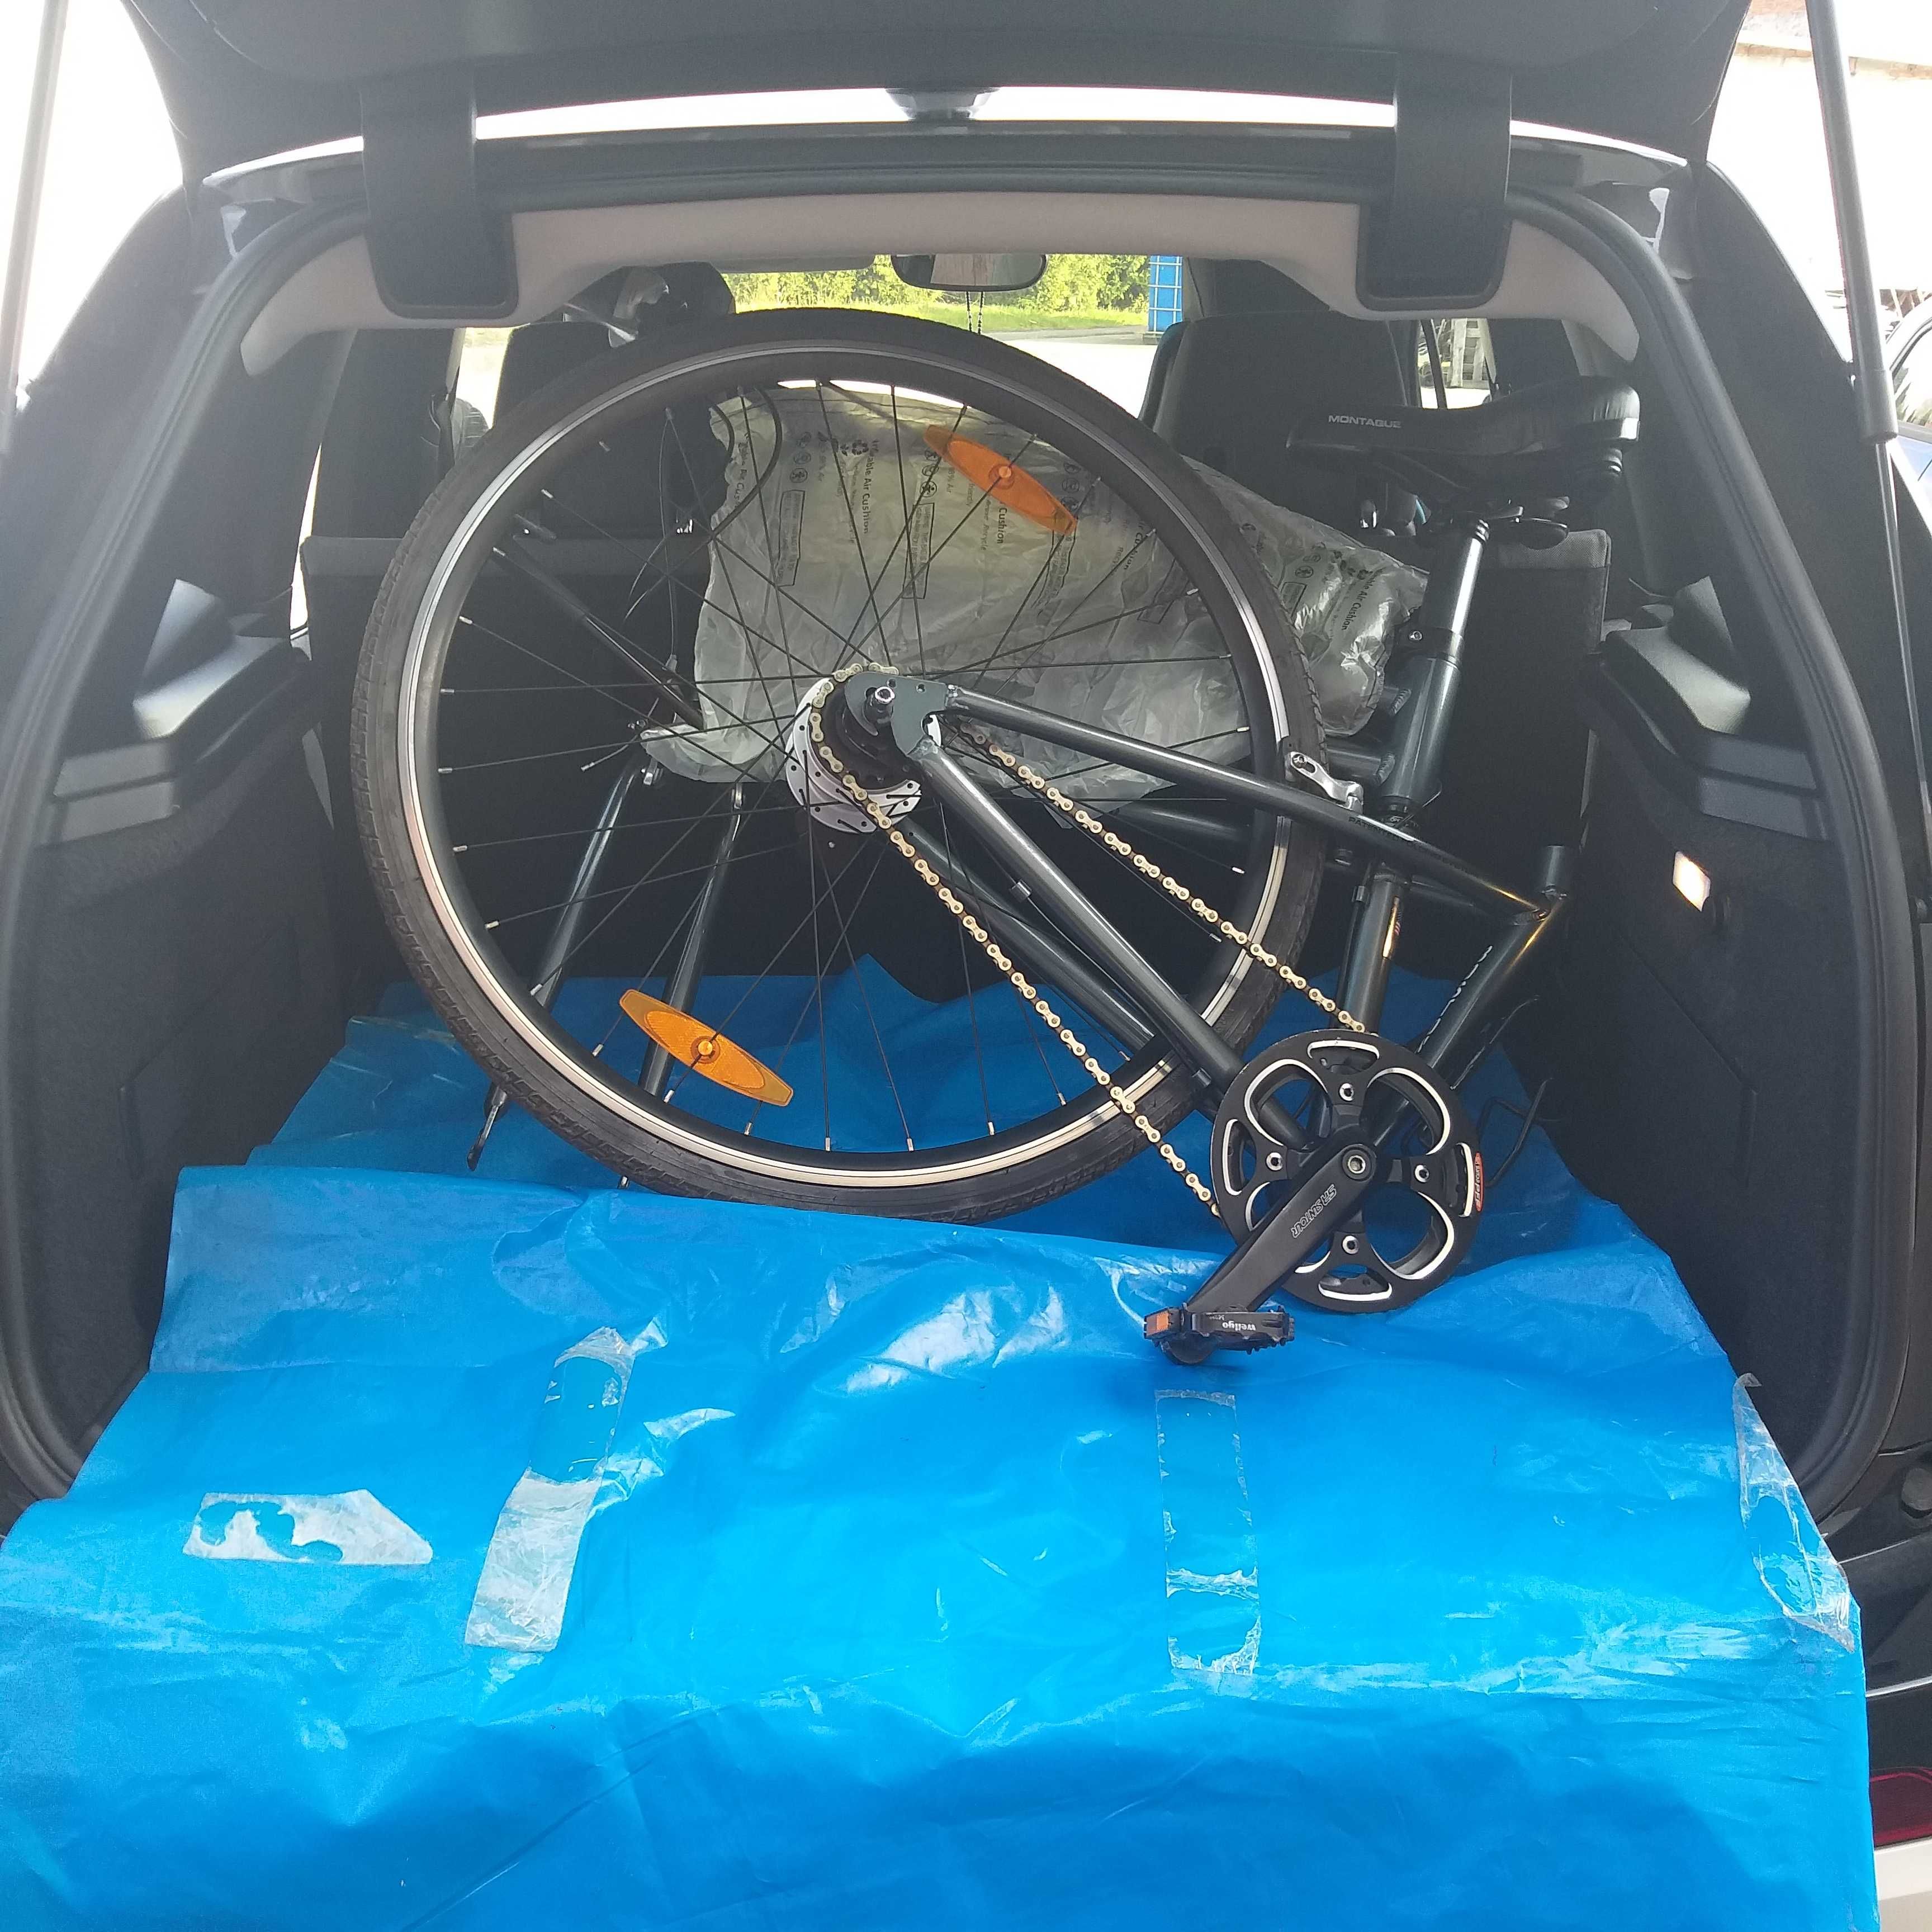 Rower składany MONTAGUE BOSTON 28`koło rower składak do kampera auta